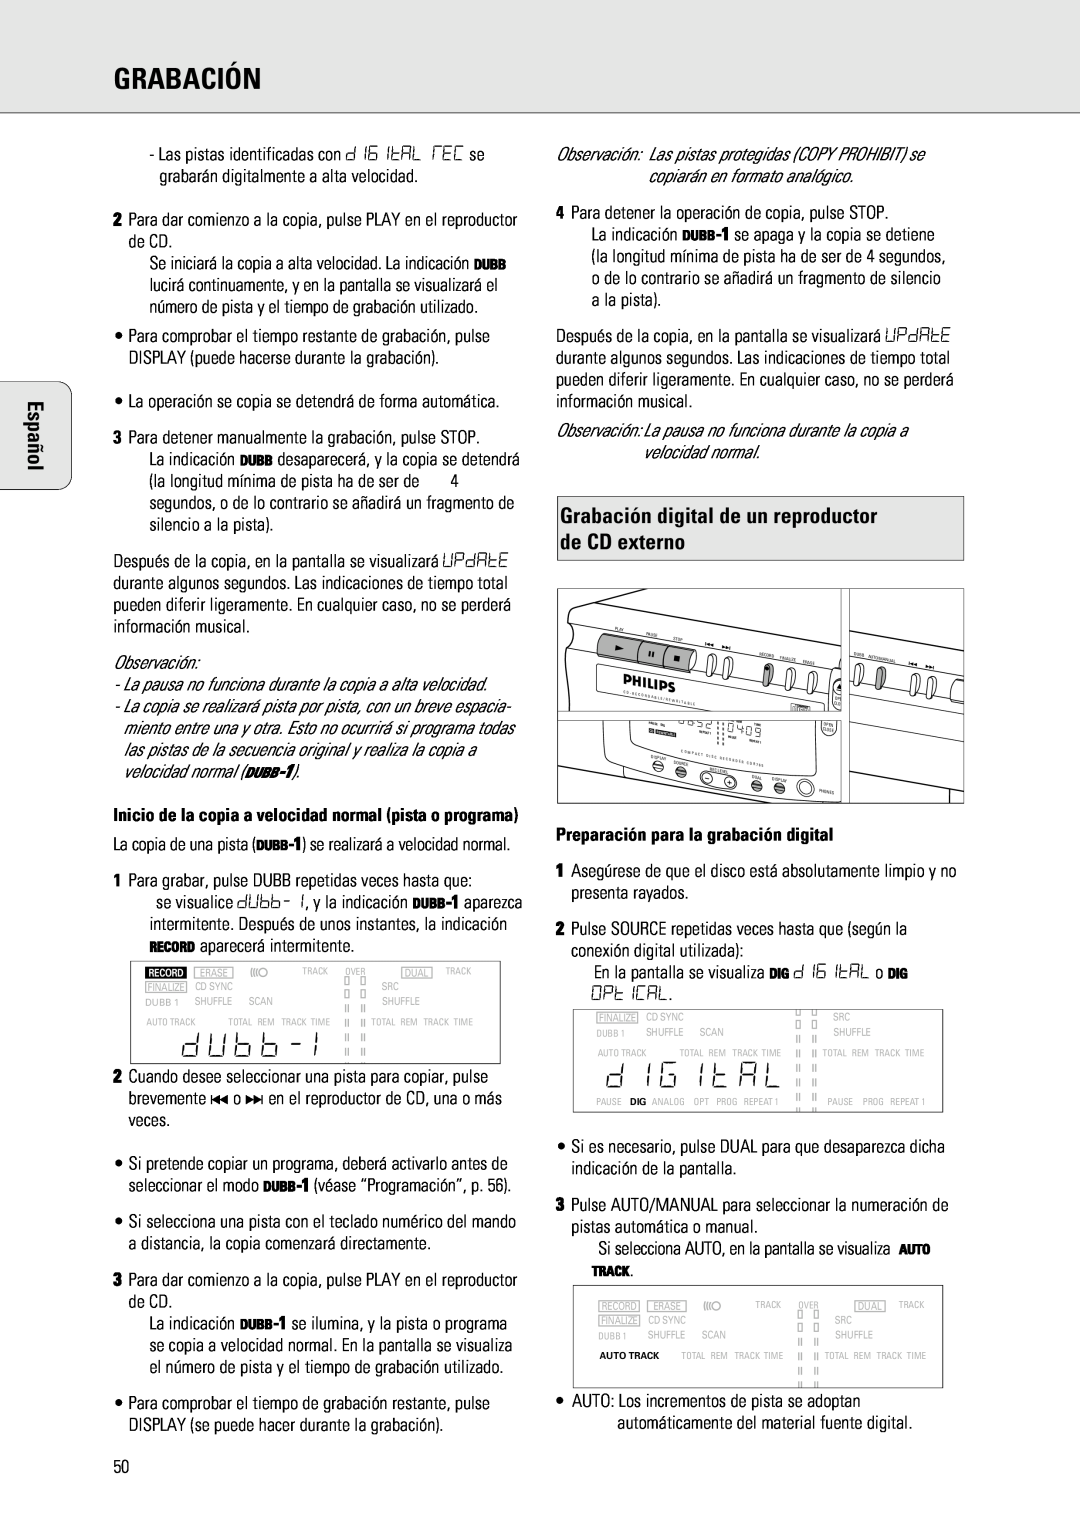 Philips 765 manual Español, Grabación digital de un reproductor, de CD externo 